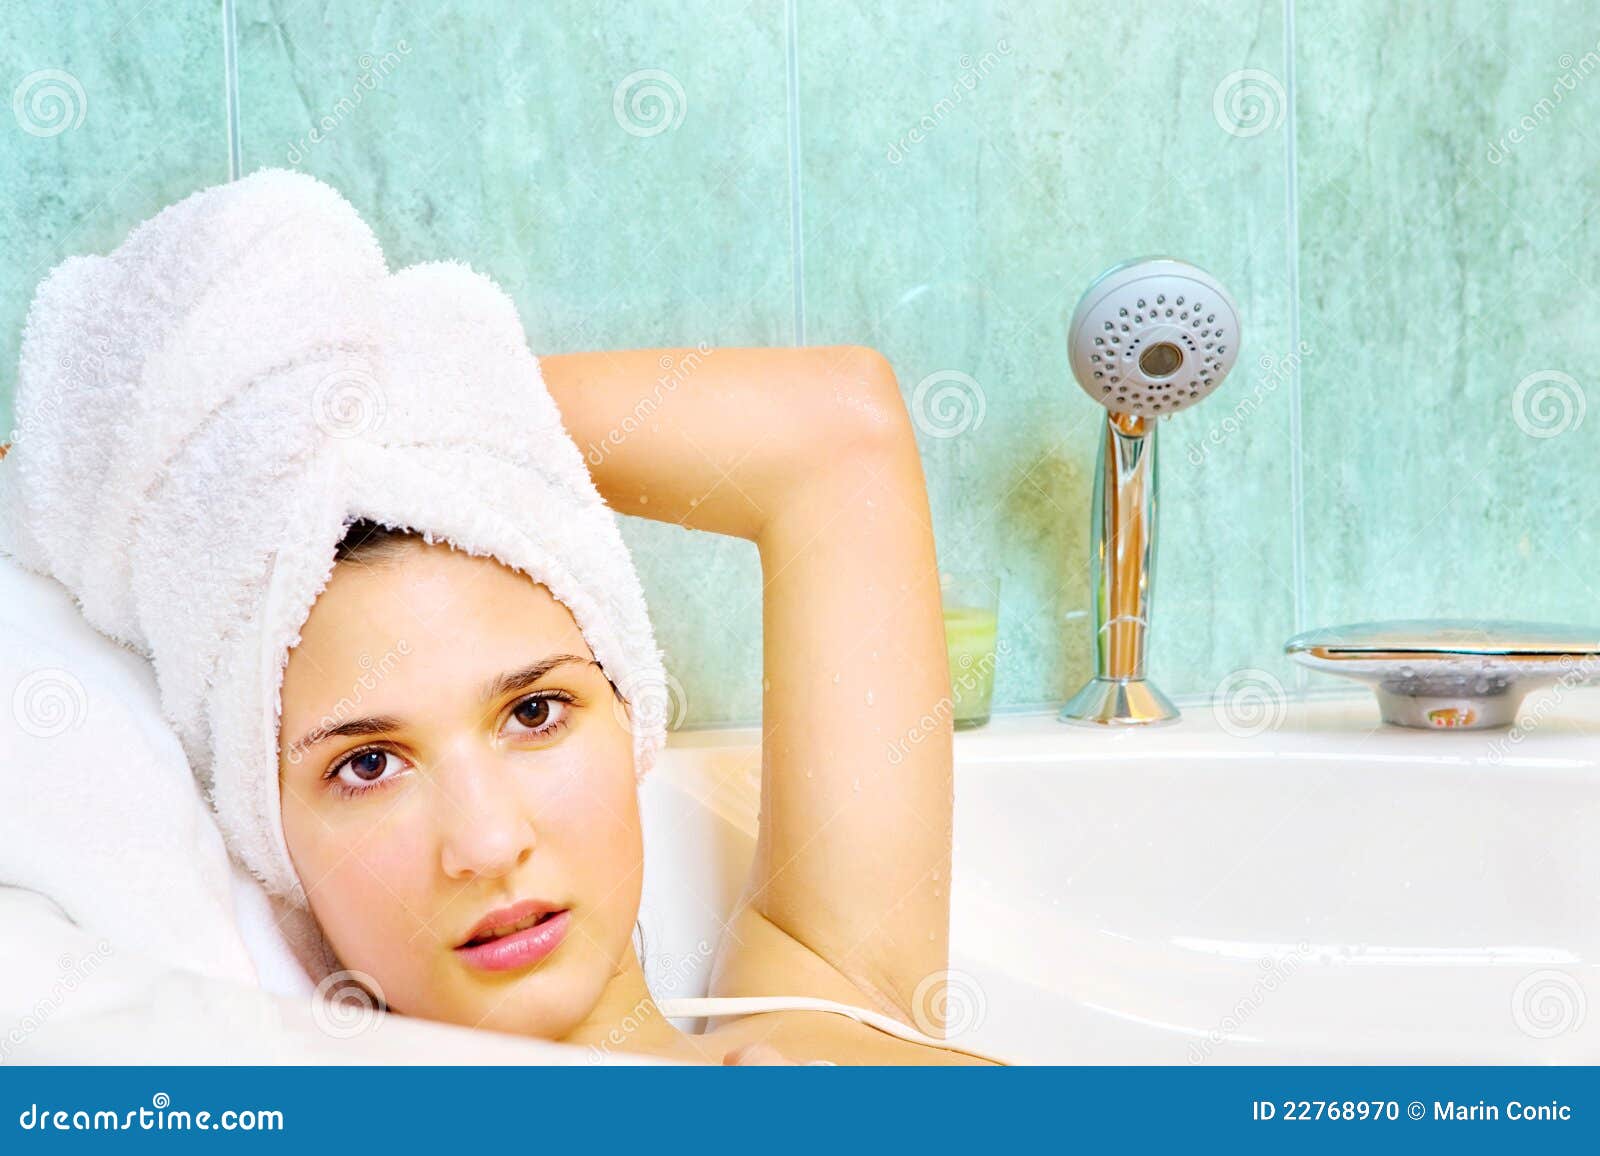 Сестра после ванной. Девушка в полотенце в ванной. Женщина с полотенцем на голове. Девушка после ванной. Мытая голова в полотенце.